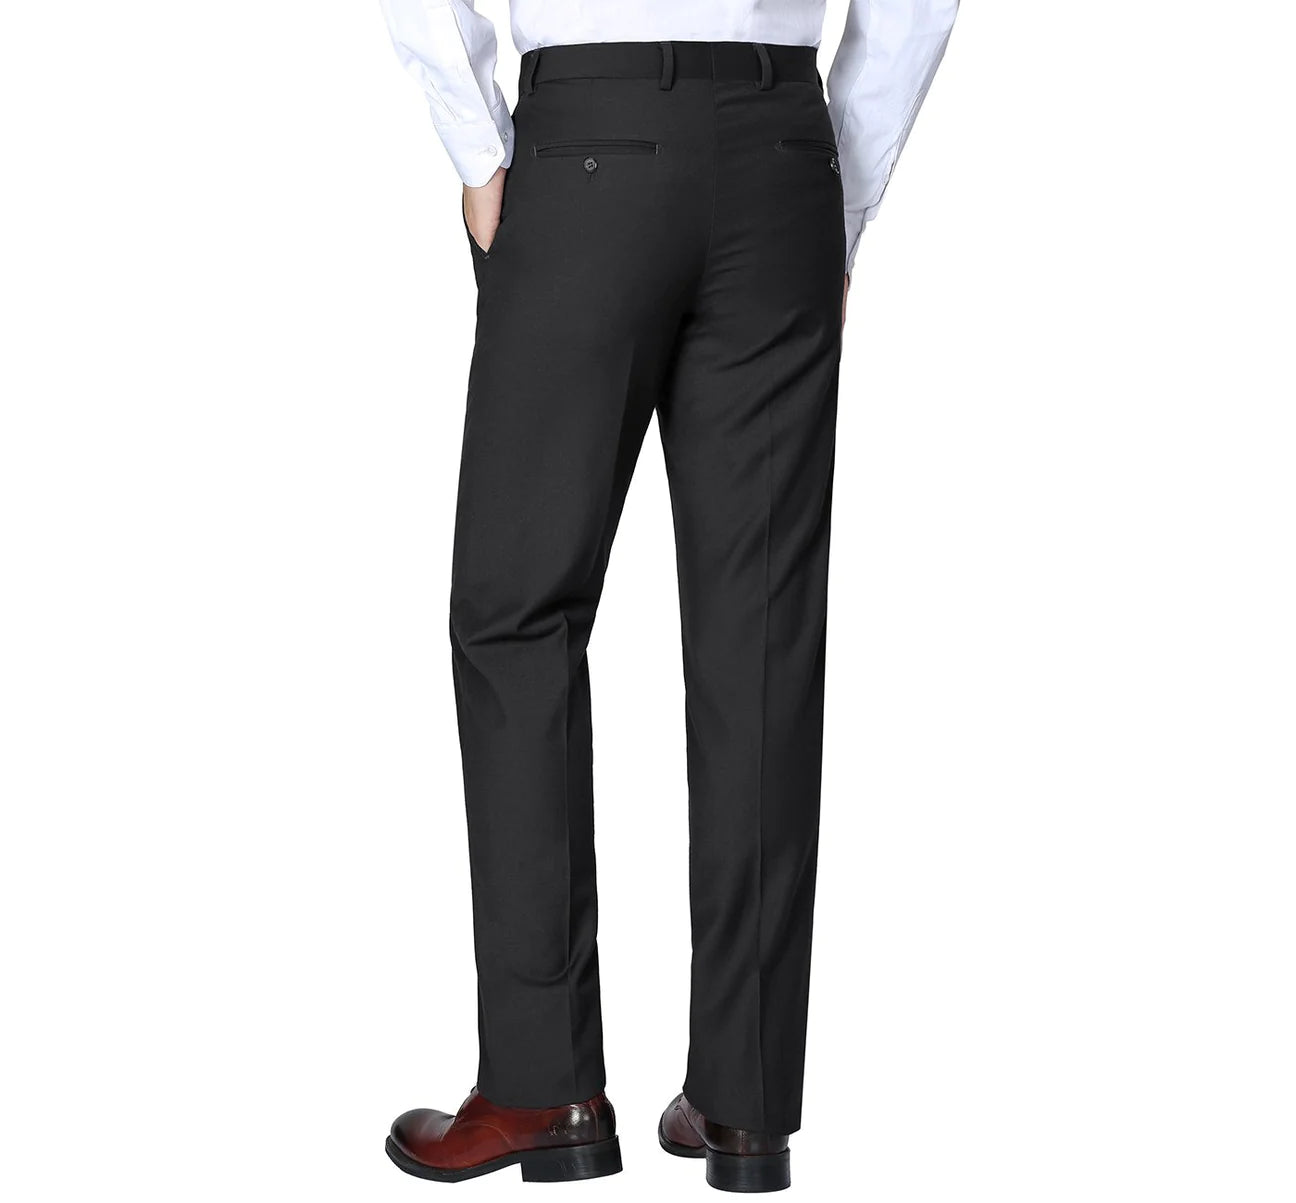 Renoir Black Slim Fit 100% Virgin Wool Suit Slacks 508-1